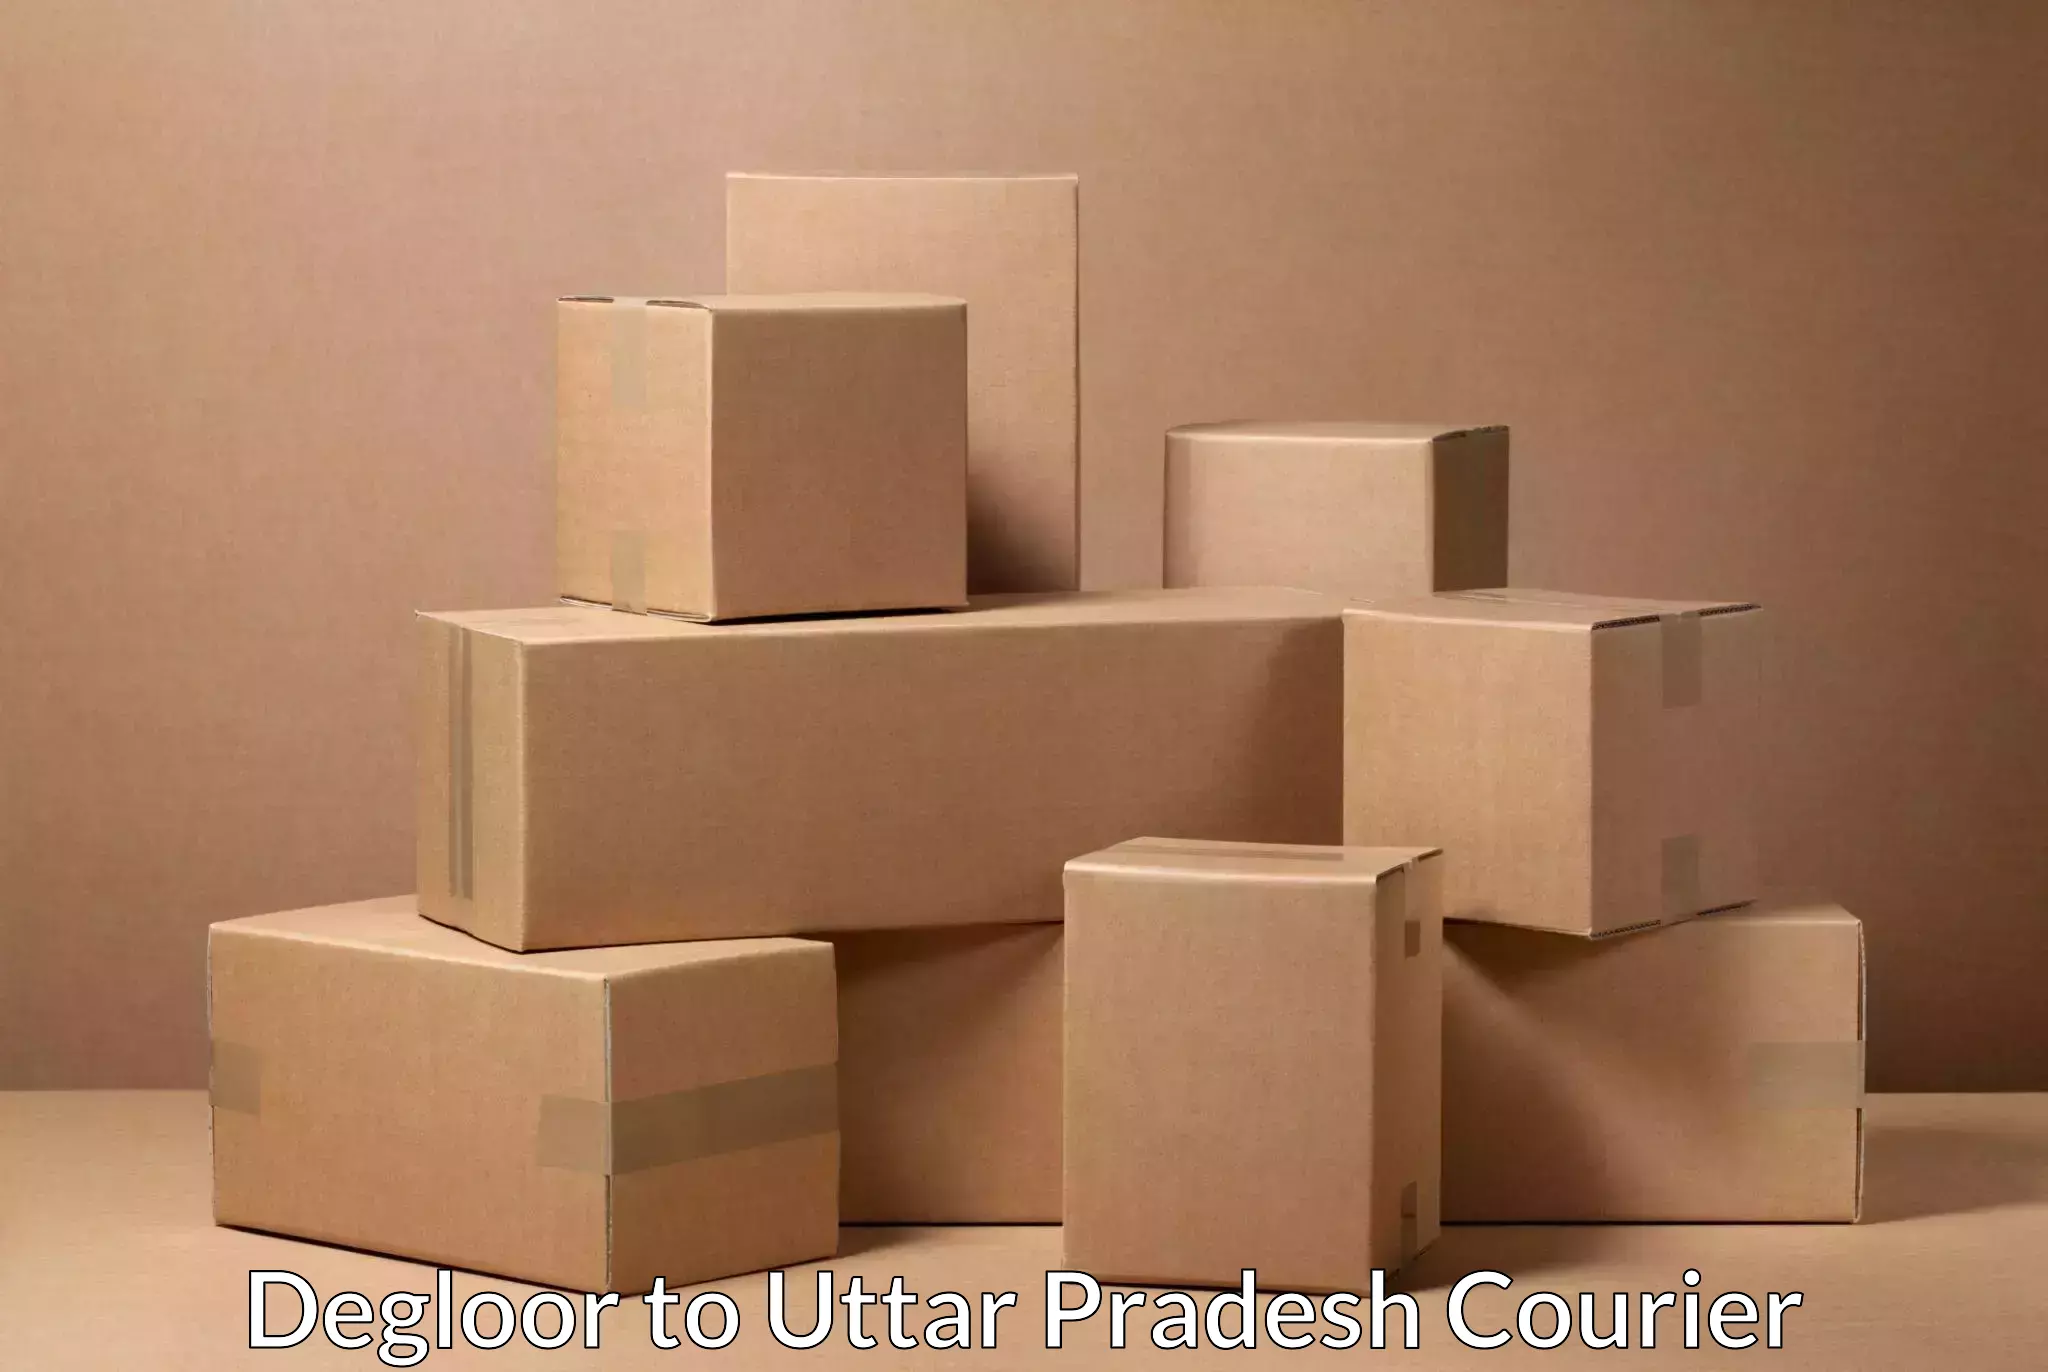 Round-the-clock parcel delivery Degloor to Afzalgarh